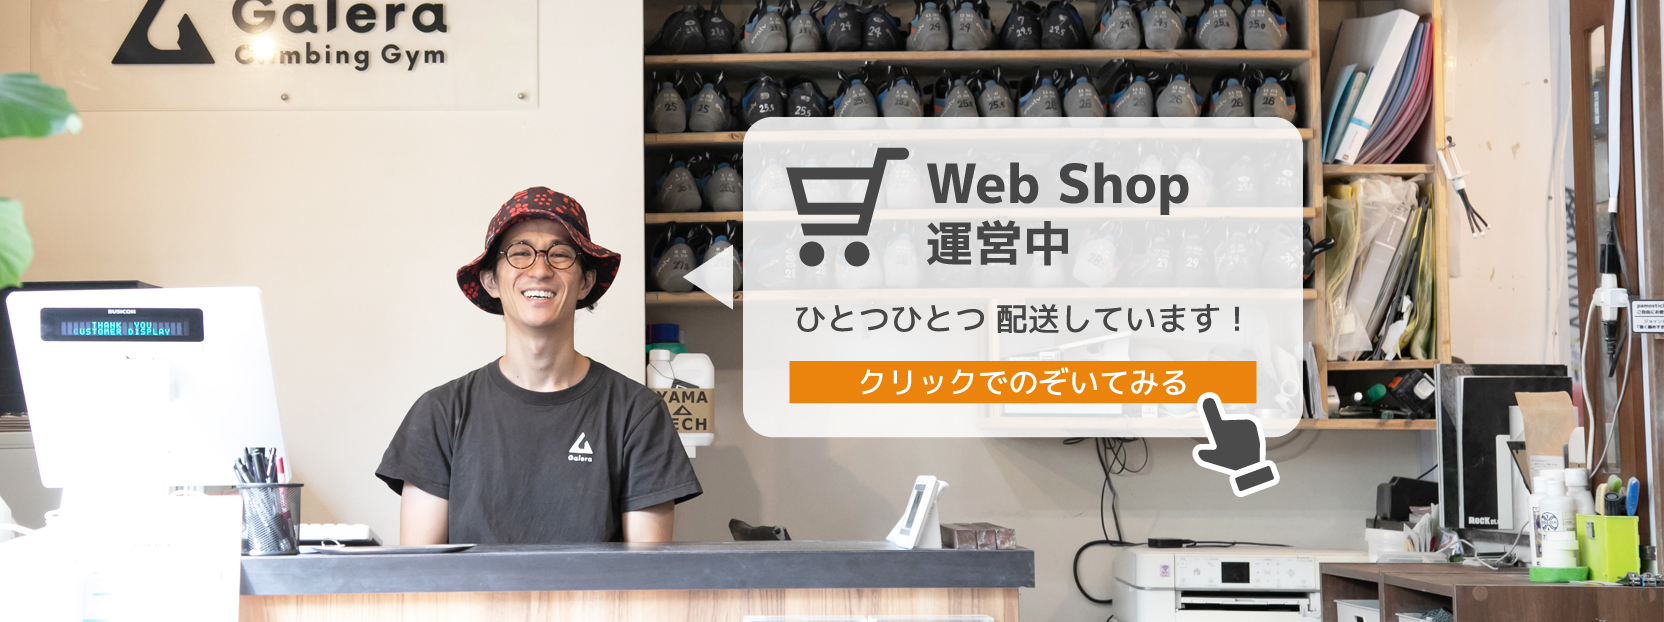 Galera Web Shop